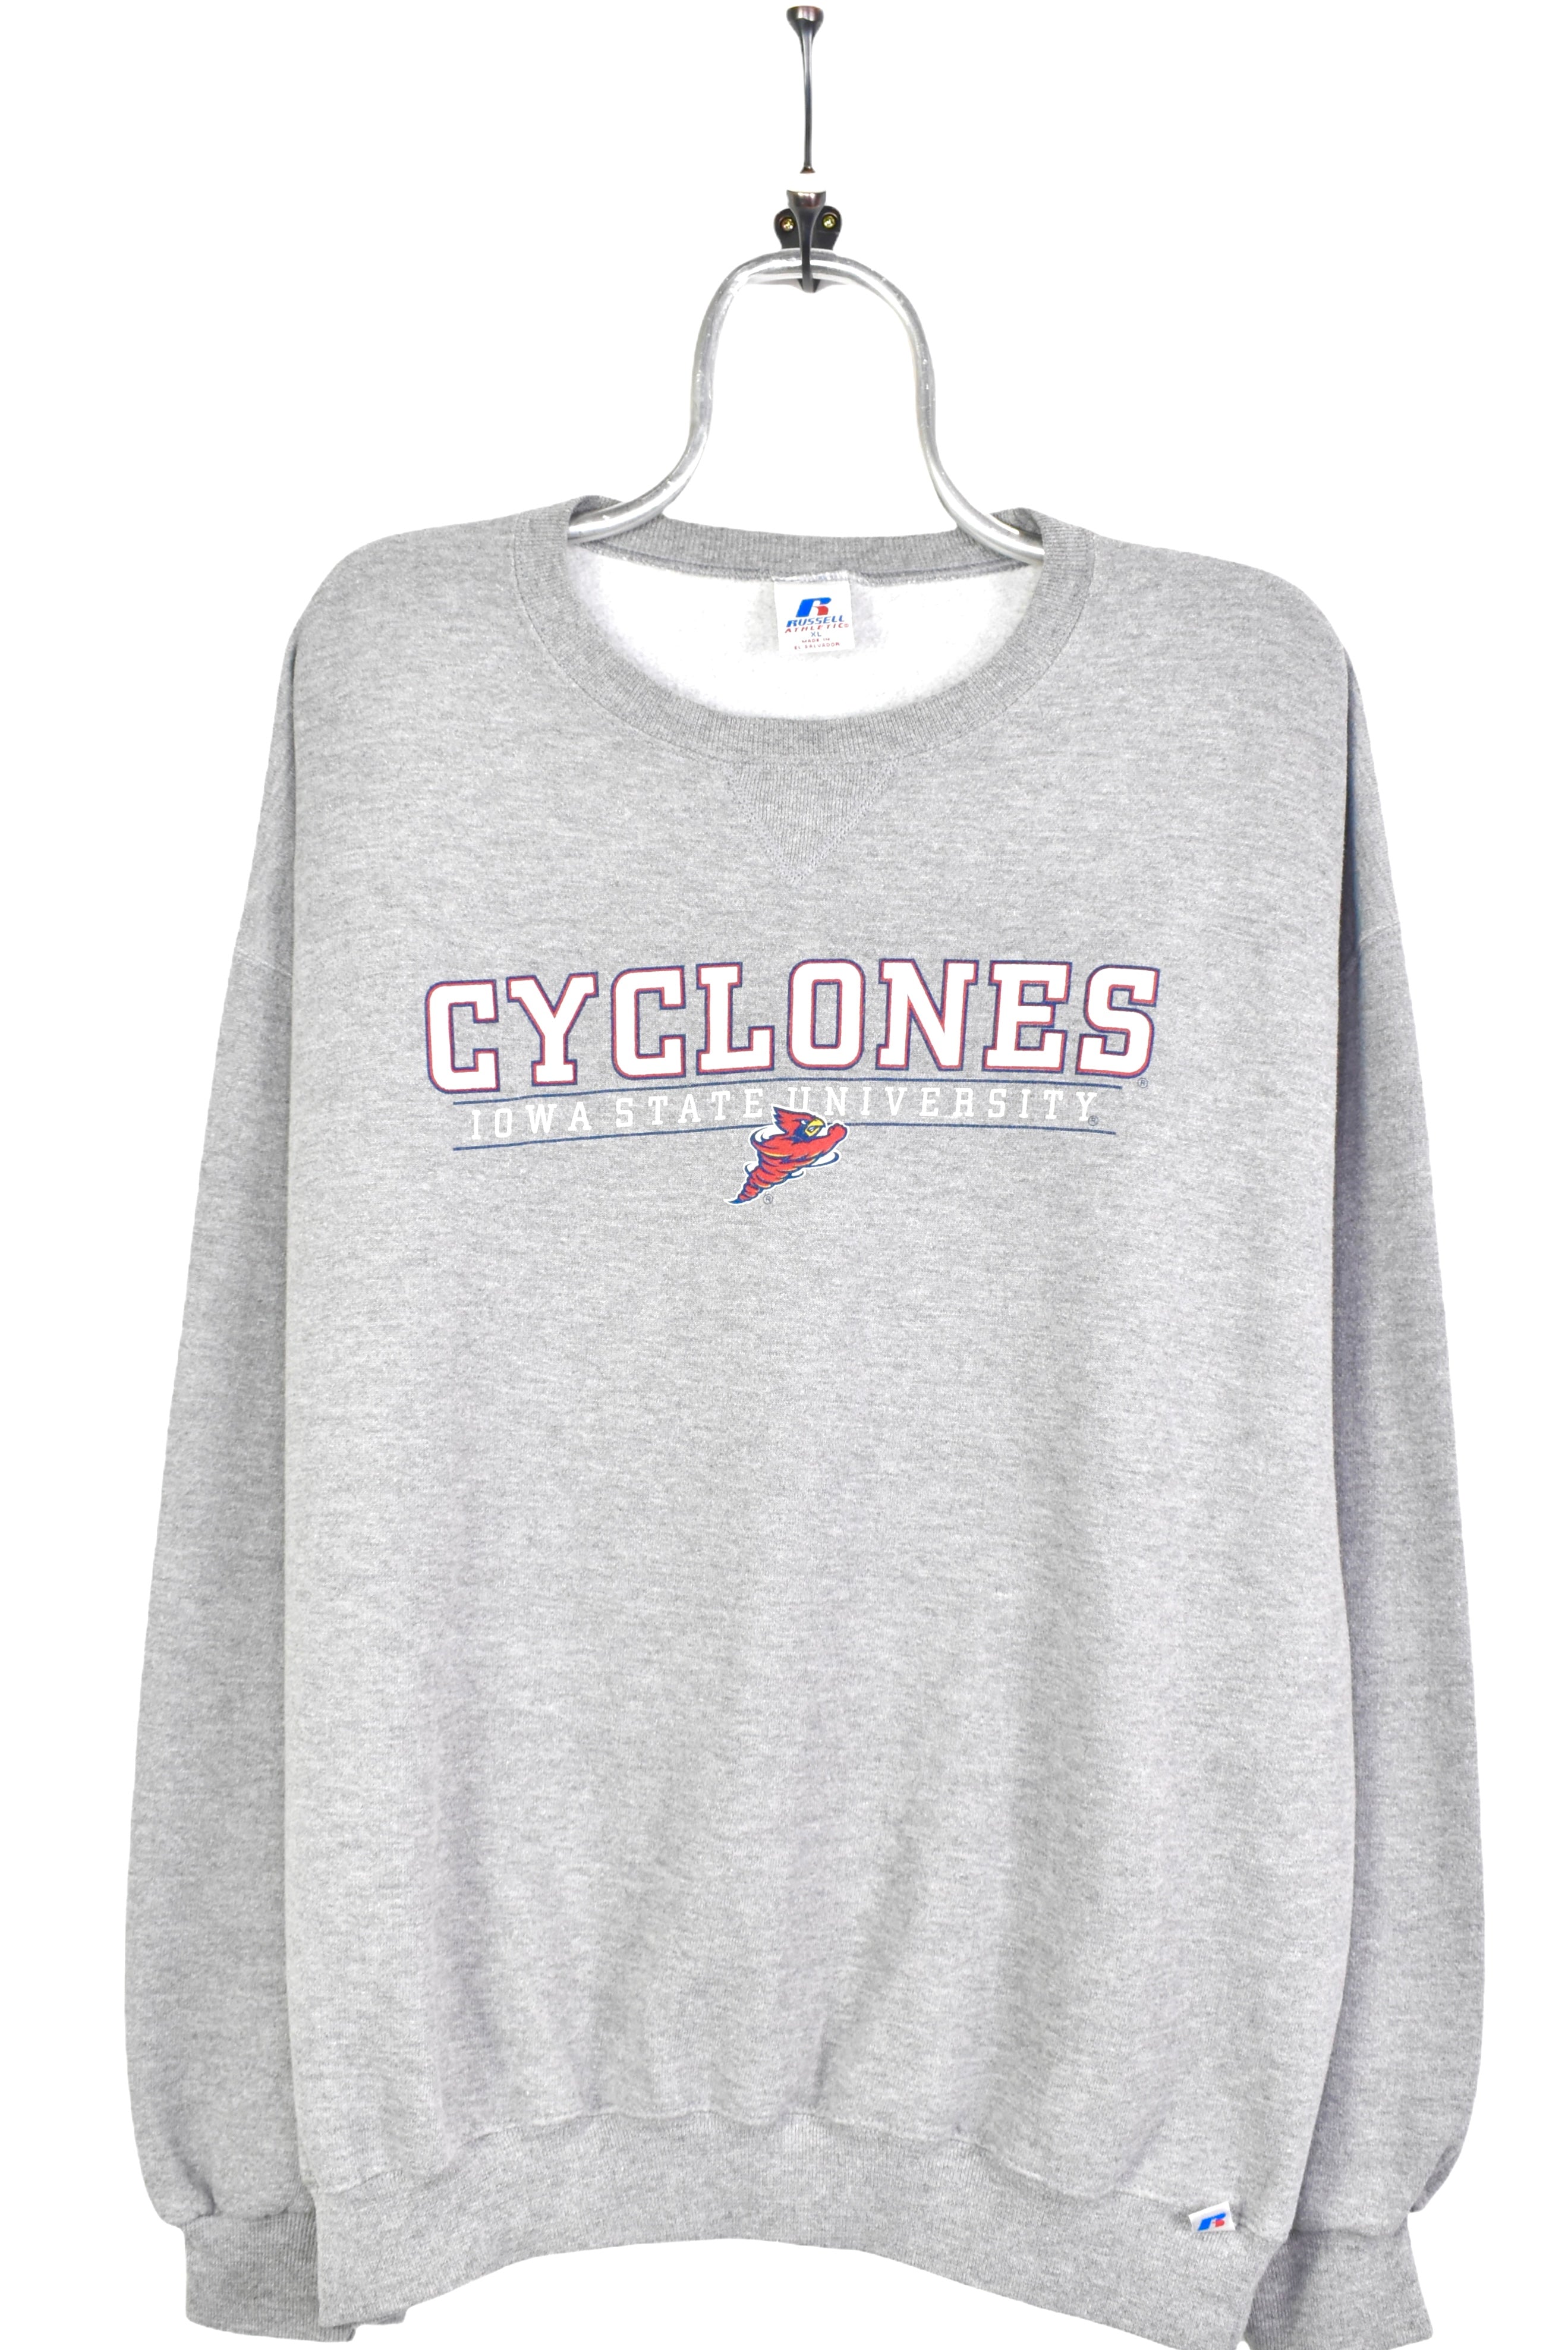 Vintage Iowa State University grey sweatshirt | XL COLLEGE